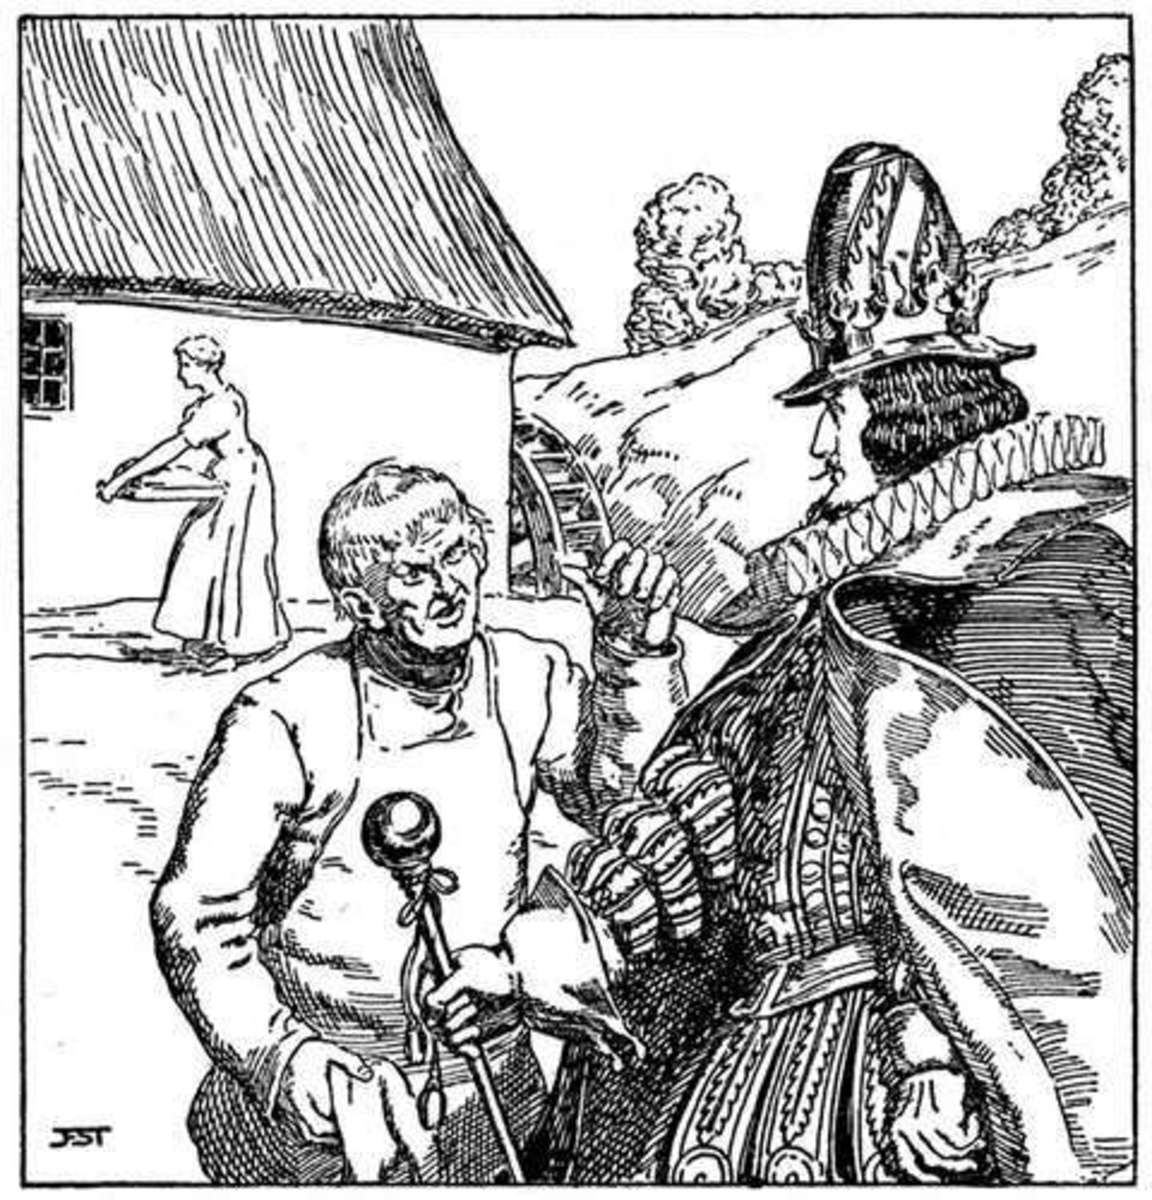 Illustration by Franz Stassen (1869-1949)